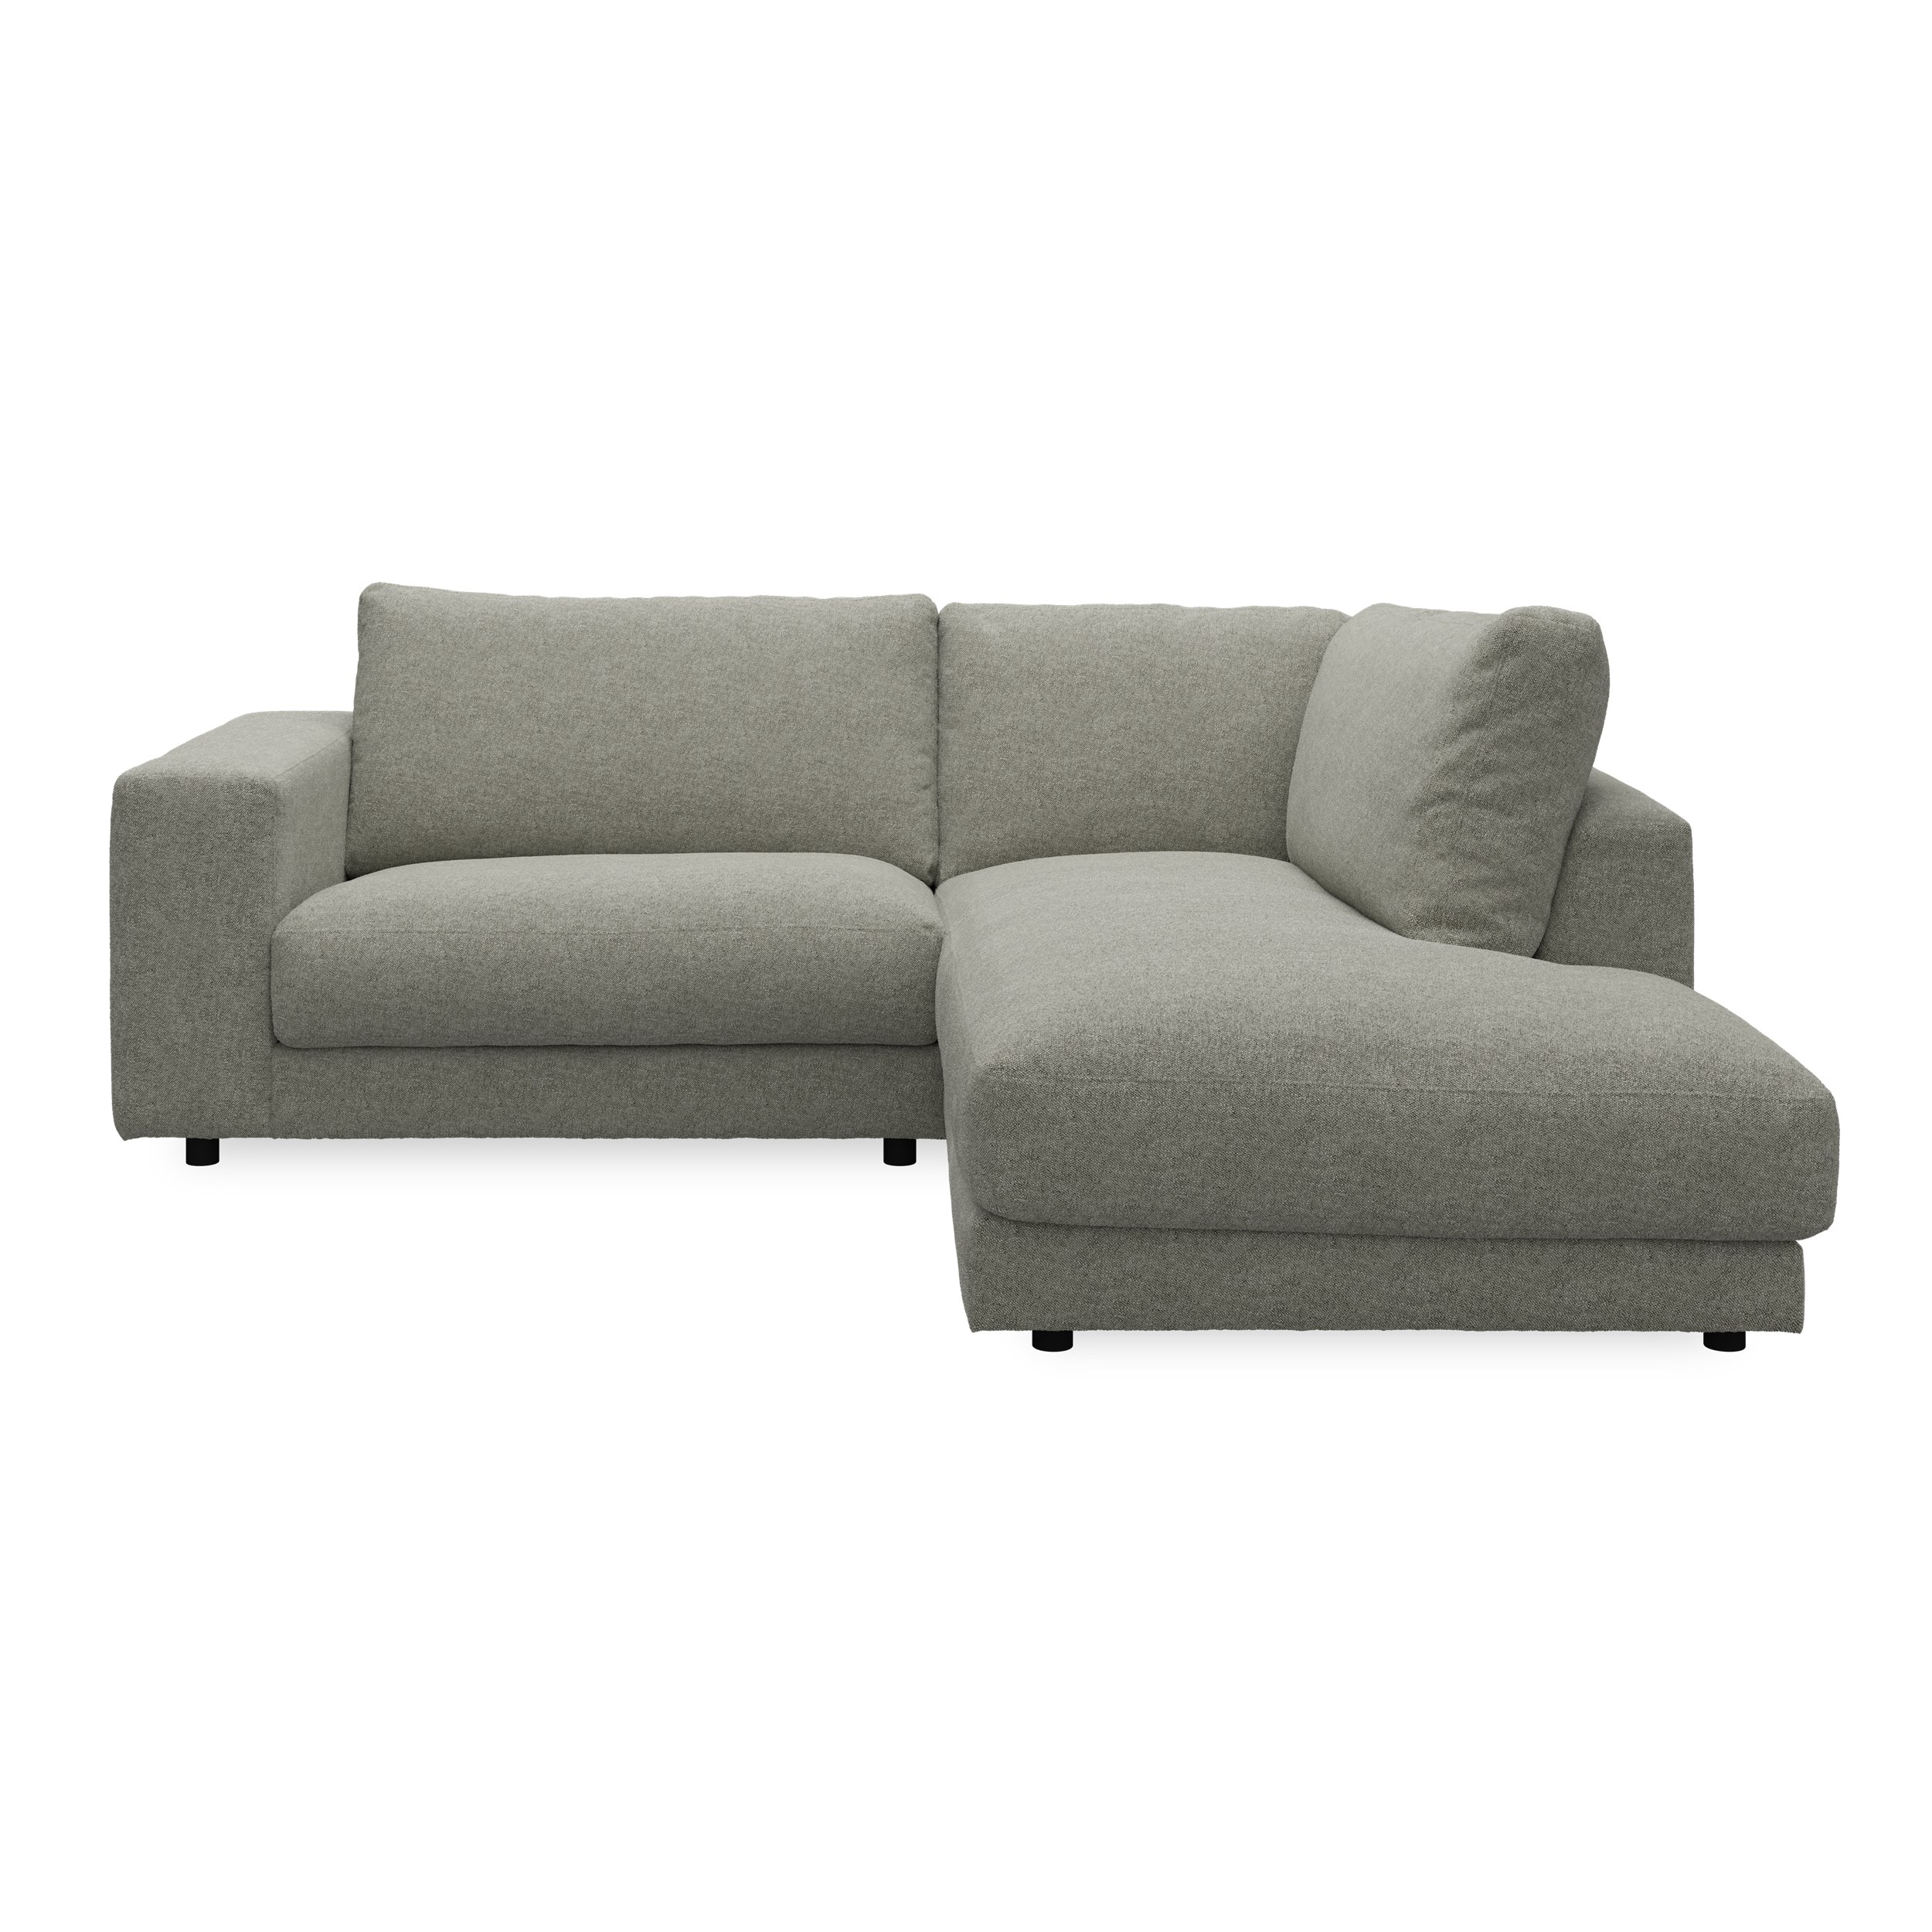 Bennent högervänd soffa med divan - Yelda Light Grey klädsel, ben i svart plast och S:skum/fib/din/sili R:Dun/skum